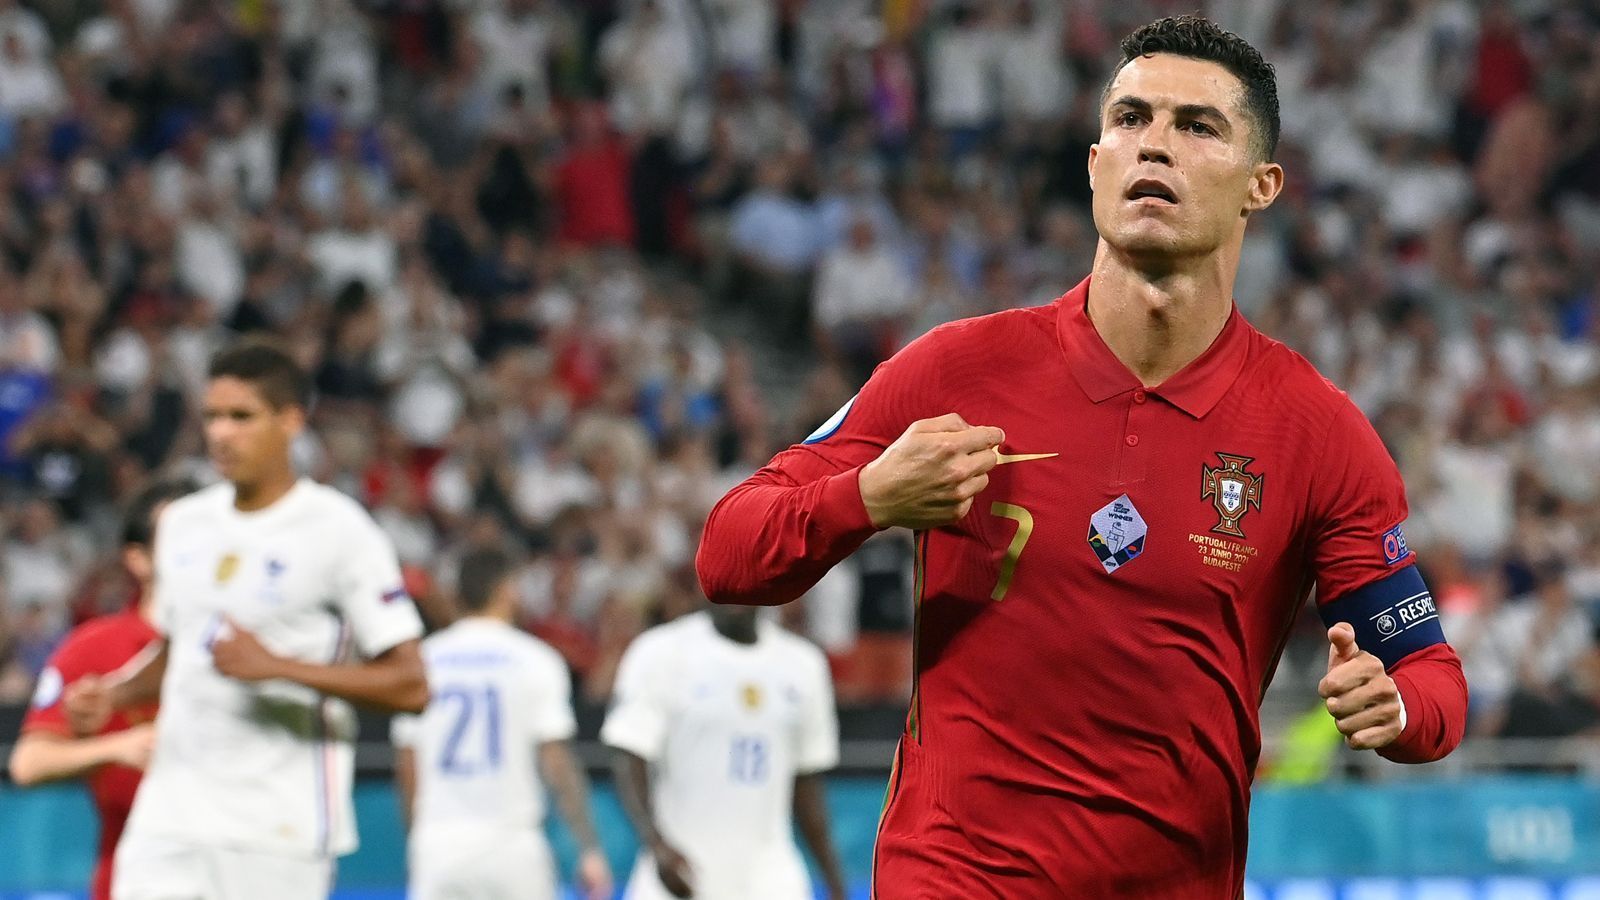 
                <strong>Gewinner: Cristiano Ronaldo trug Portugal einmal mehr alleine</strong><br>
                Dass Portugal als Titelverteidiger überhaupt über die Gruppenphase hinaus vom erneuten EM-Triumph träumen durfte, hatte mal wieder einen Hauptgrund: Cristiano Ronaldo. Der 36-Jährige trug die Portugiesen in der EM-Vorrunde einmal mehr durch seine individuelle Qualität. Fünf Treffer erzielte der Profi von Juventus Turin und sicherte Portugal damit Platz drei in der vermeintlich so starken Deutschland-Gruppe. Zudem hat "CR7" mit nun 109 Länderspieltoren eine Weltrekord-Marke erreicht. Er löste den Iraner und früheren Bundesliga-Profi Ali Daei ab. Trotz des Weltstars war für Portugal im Achtelfinale dann nach einer 0:1-Pleite gegen Belgien der Traum von der Titelverteidigung zu Ende. Immerhin wurde Cristiano Ronaldo zusammen mit Tschechiens Patrik Schick aber EM-Torschützenkönig (je fünf Treffer). 
              